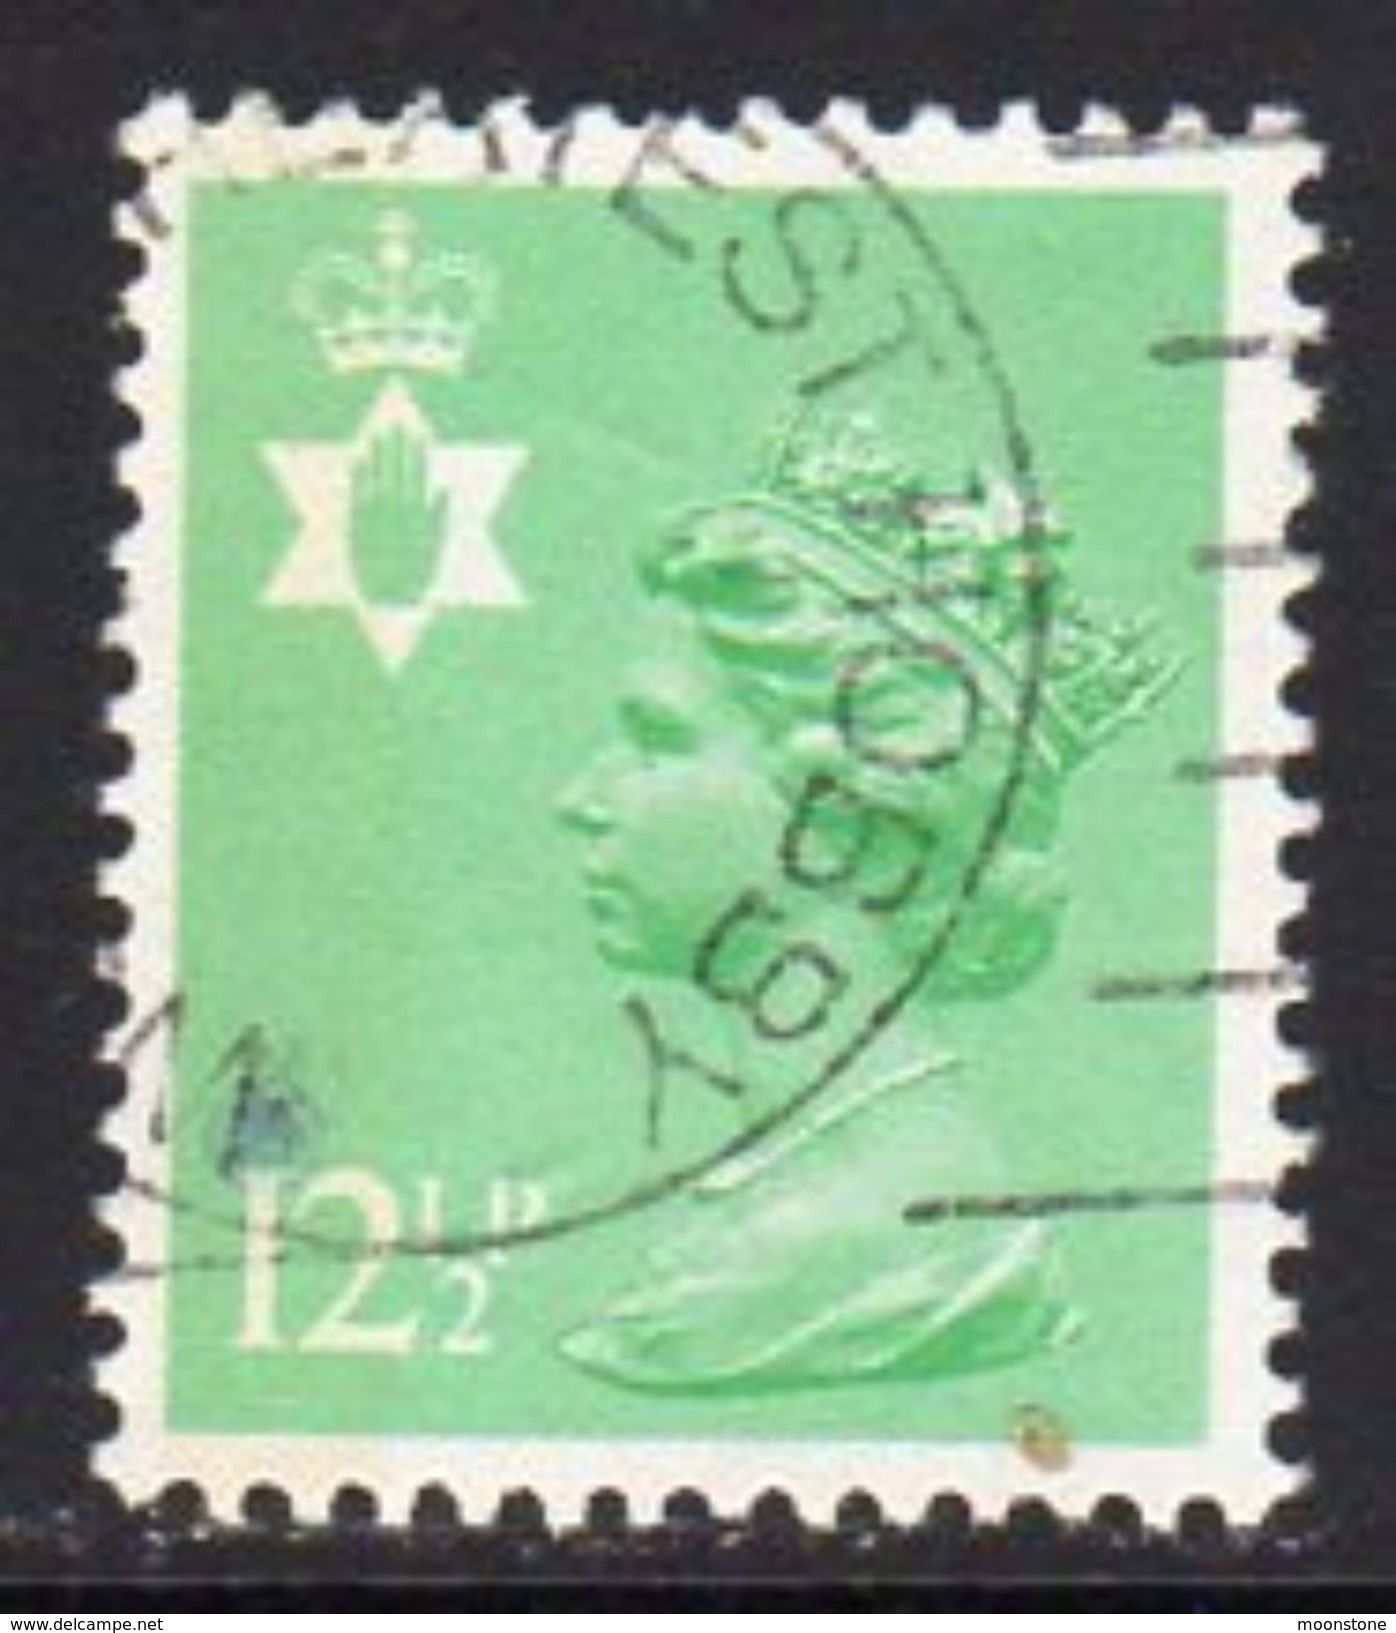 GB N. Ireland 1971-93 12½p Questa Regional Machin, P. 14, Used, SG 36 - Irlanda Del Norte